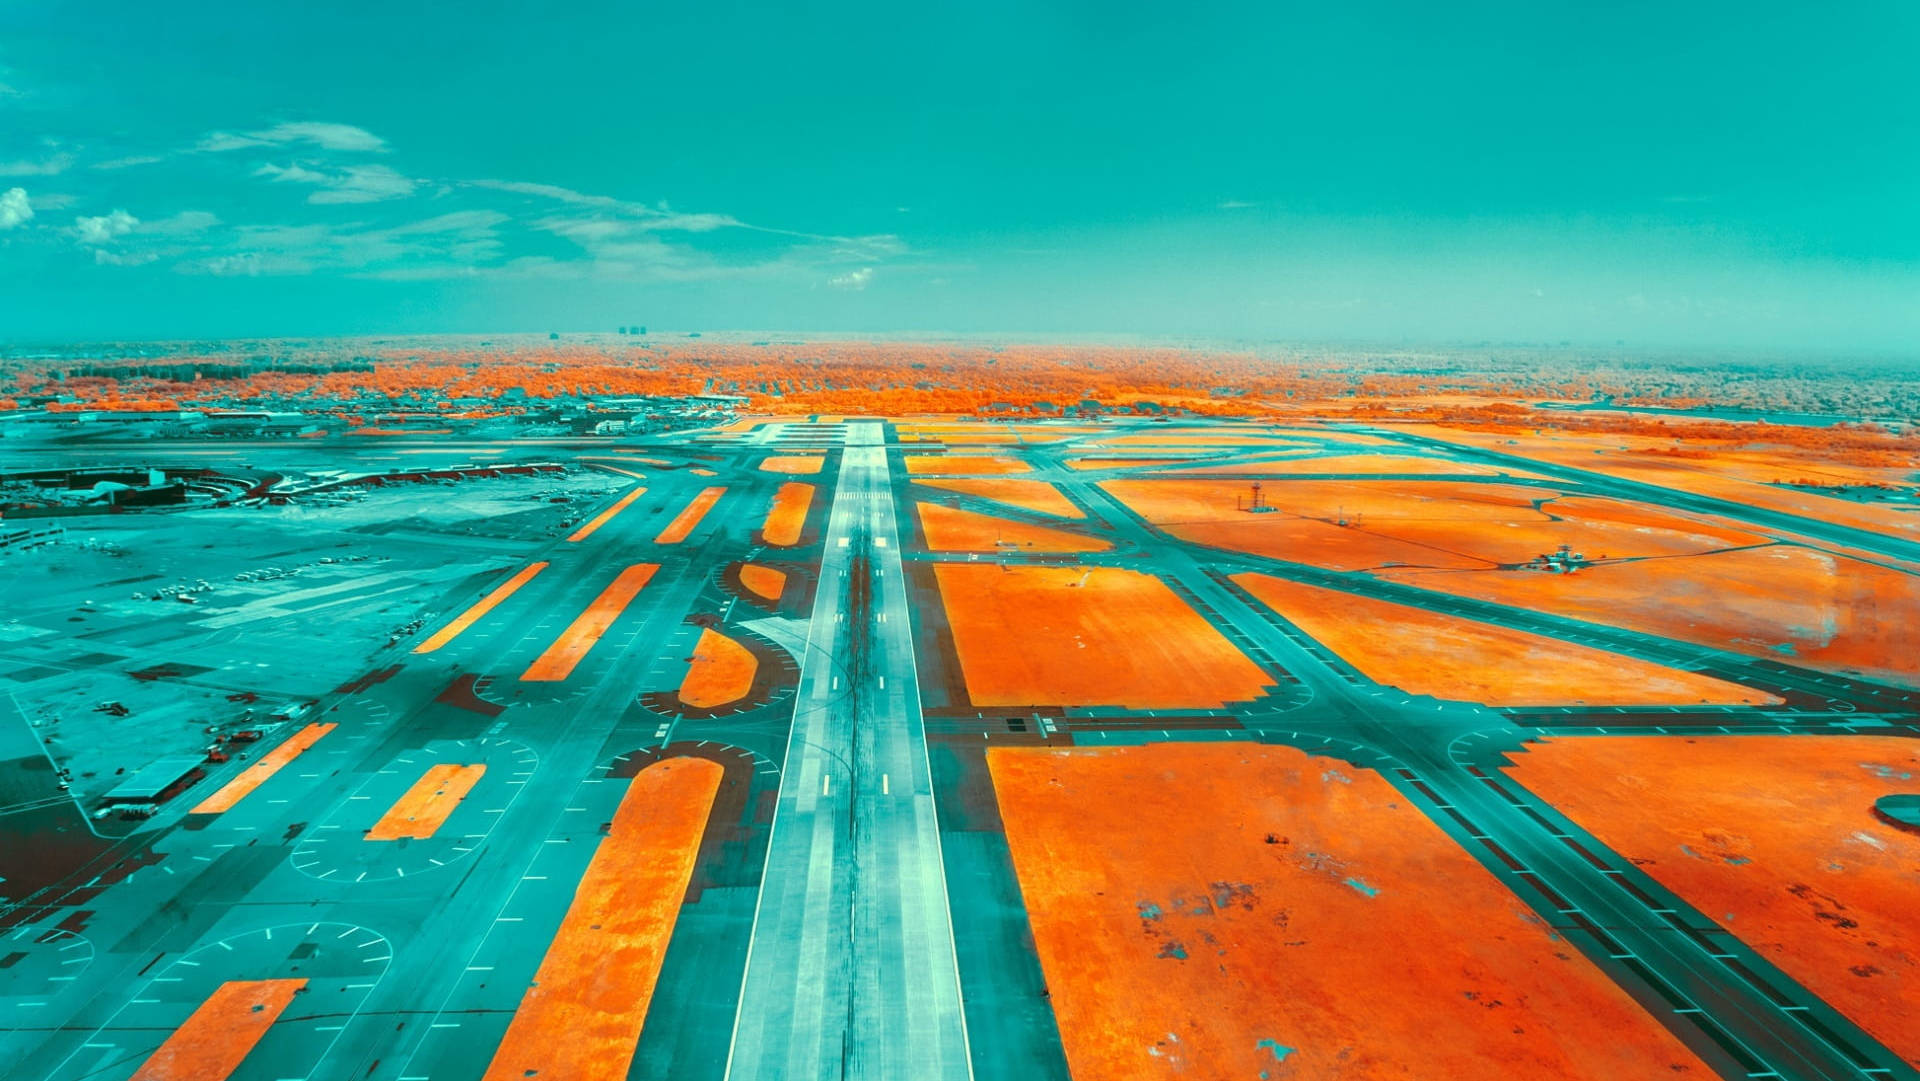 Teal And Orange Airport Runway Wallpaper